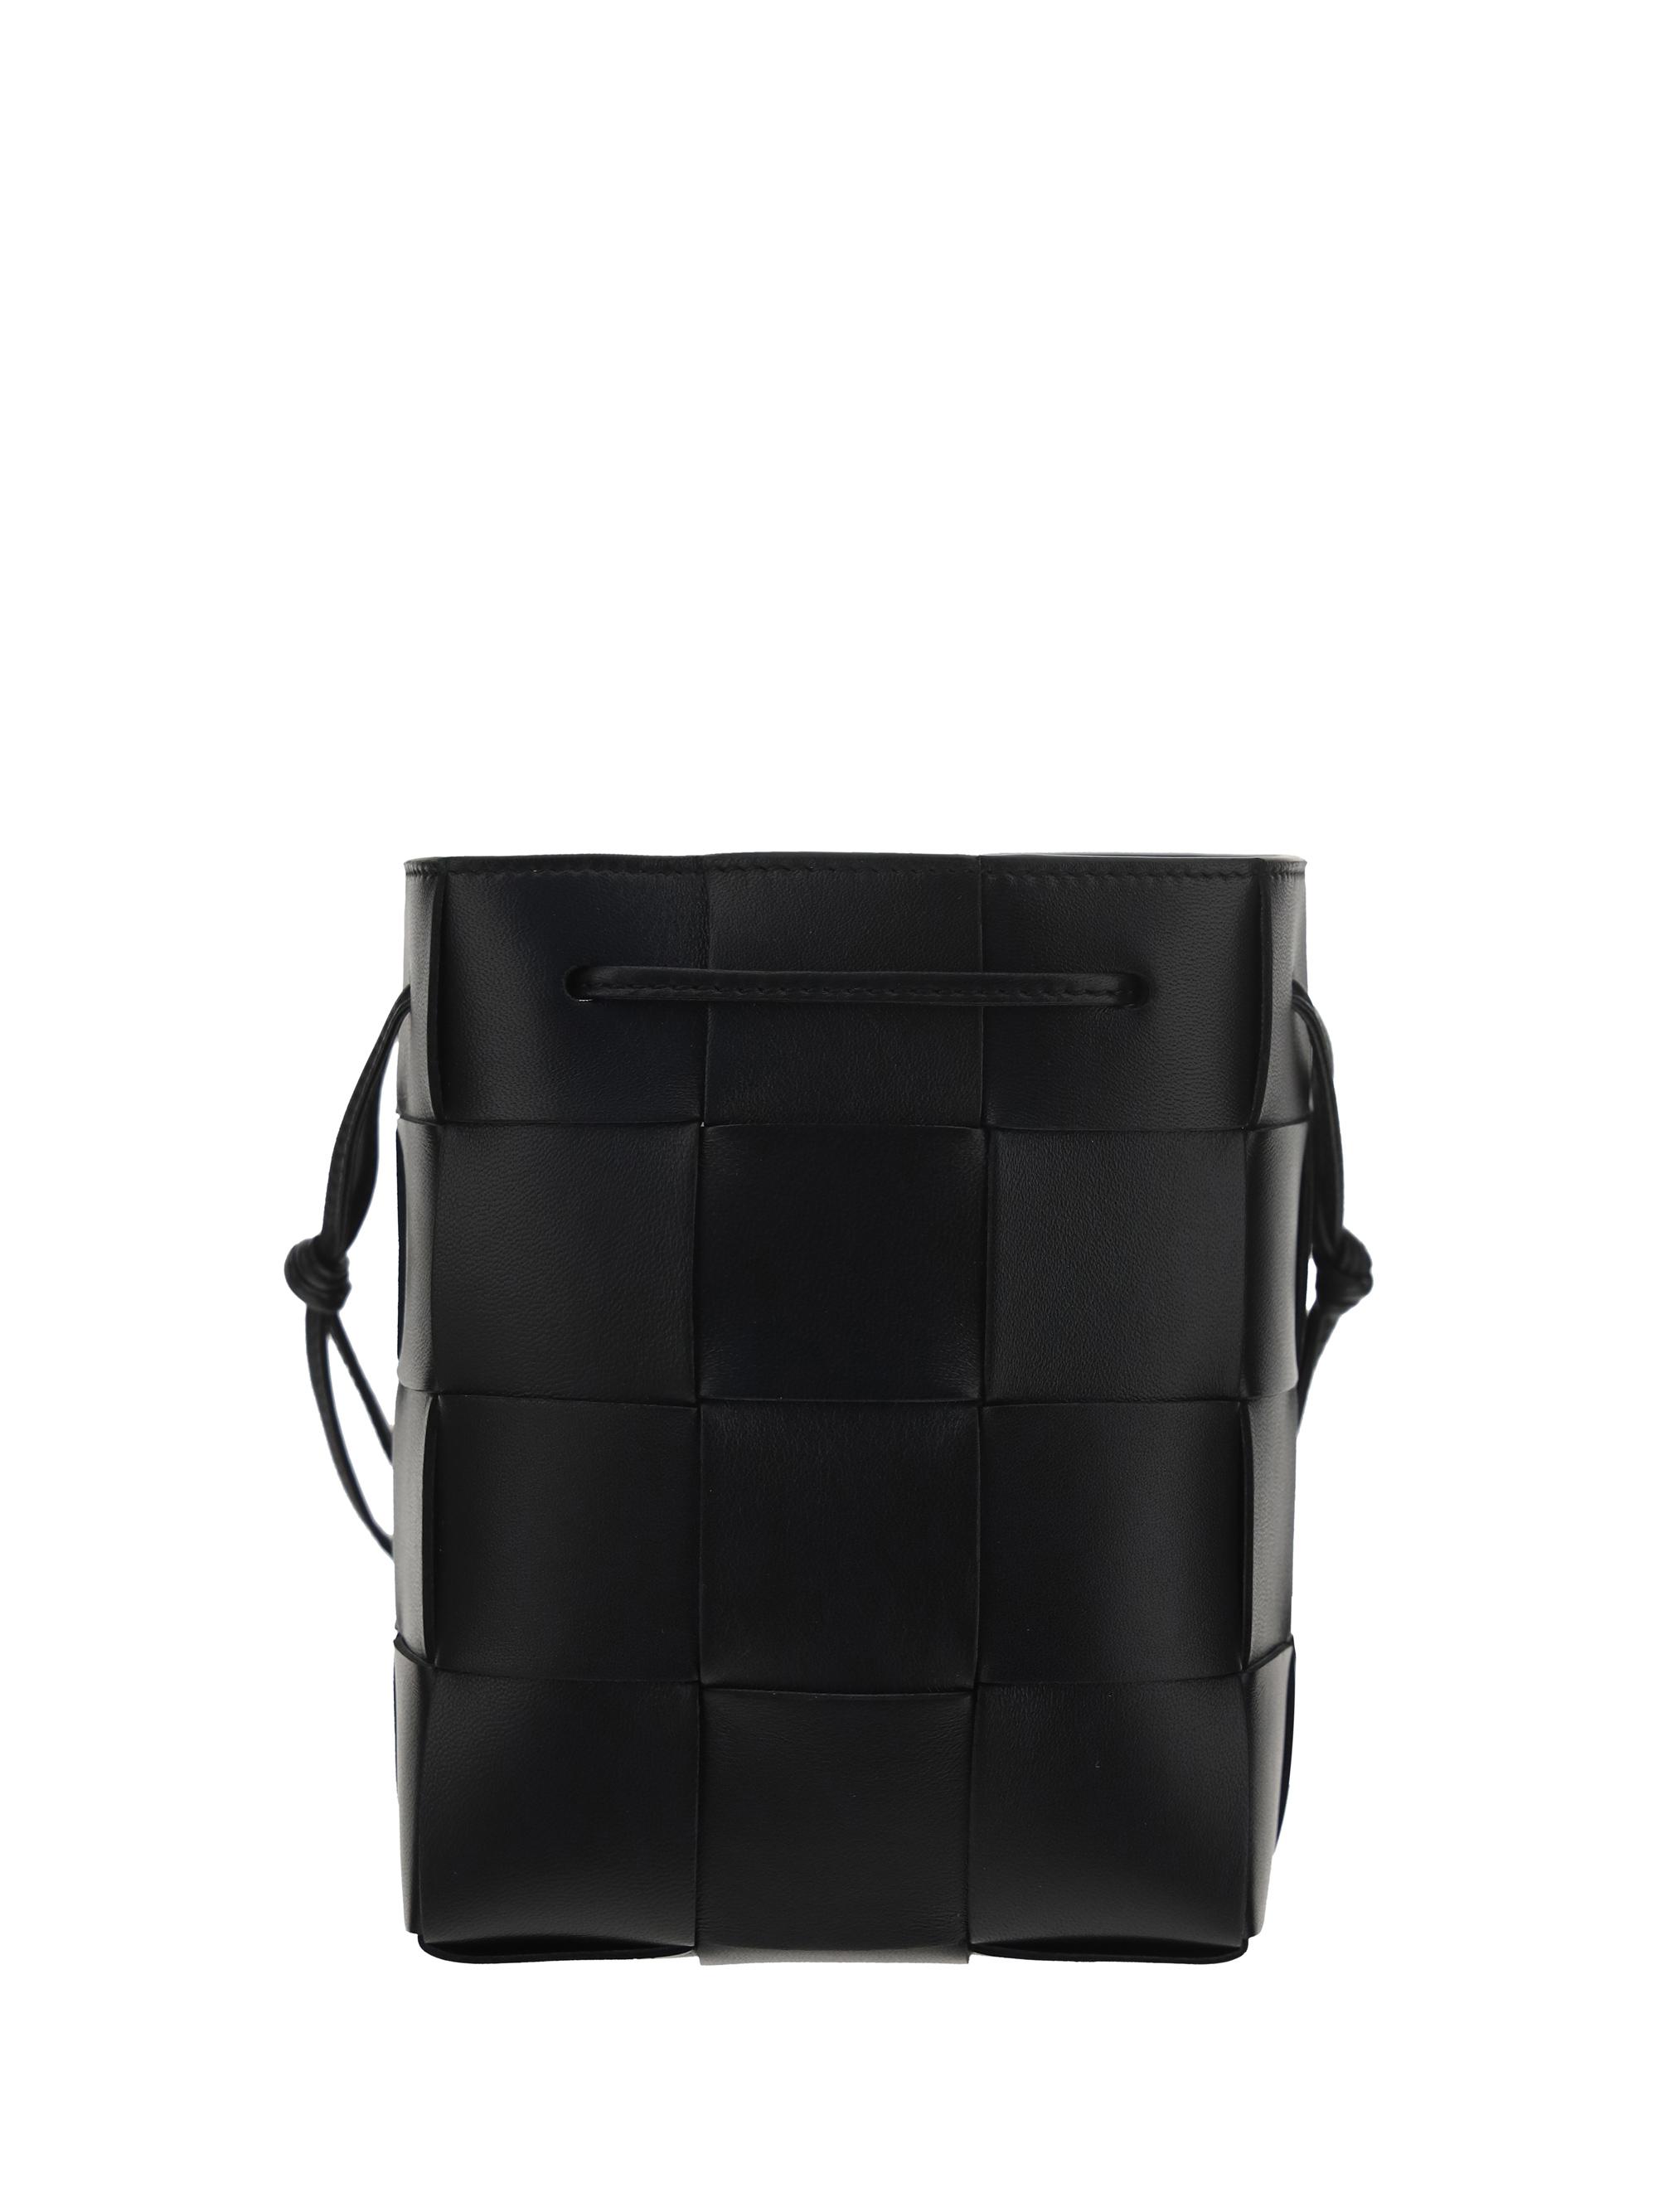 Bottega Veneta Small Cassette Bucket Bag in Black